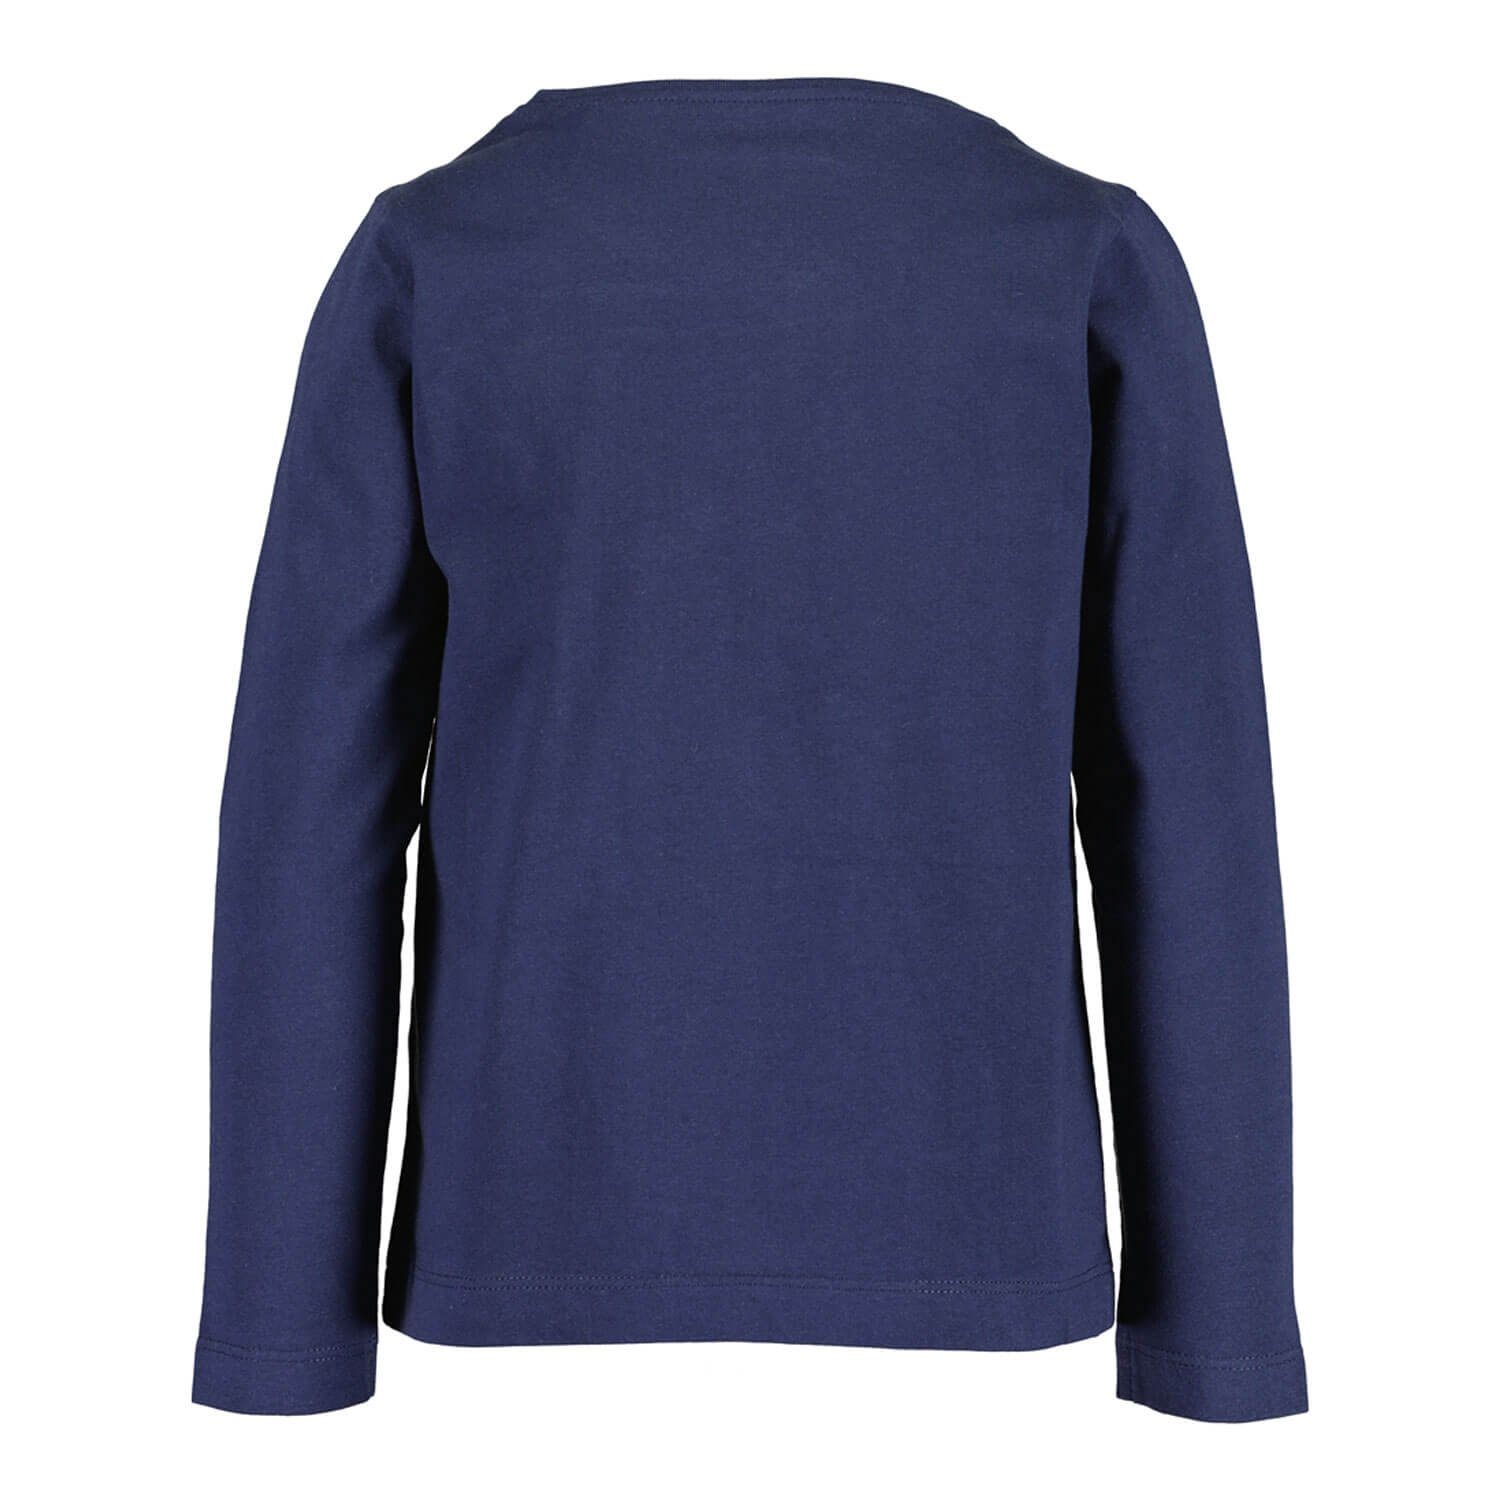 Langarm-Shirt Herz-Print Rundhalsshirt Kinder Blue nachtblau Seven Sweatshirt Mädchen mit Pailetten und